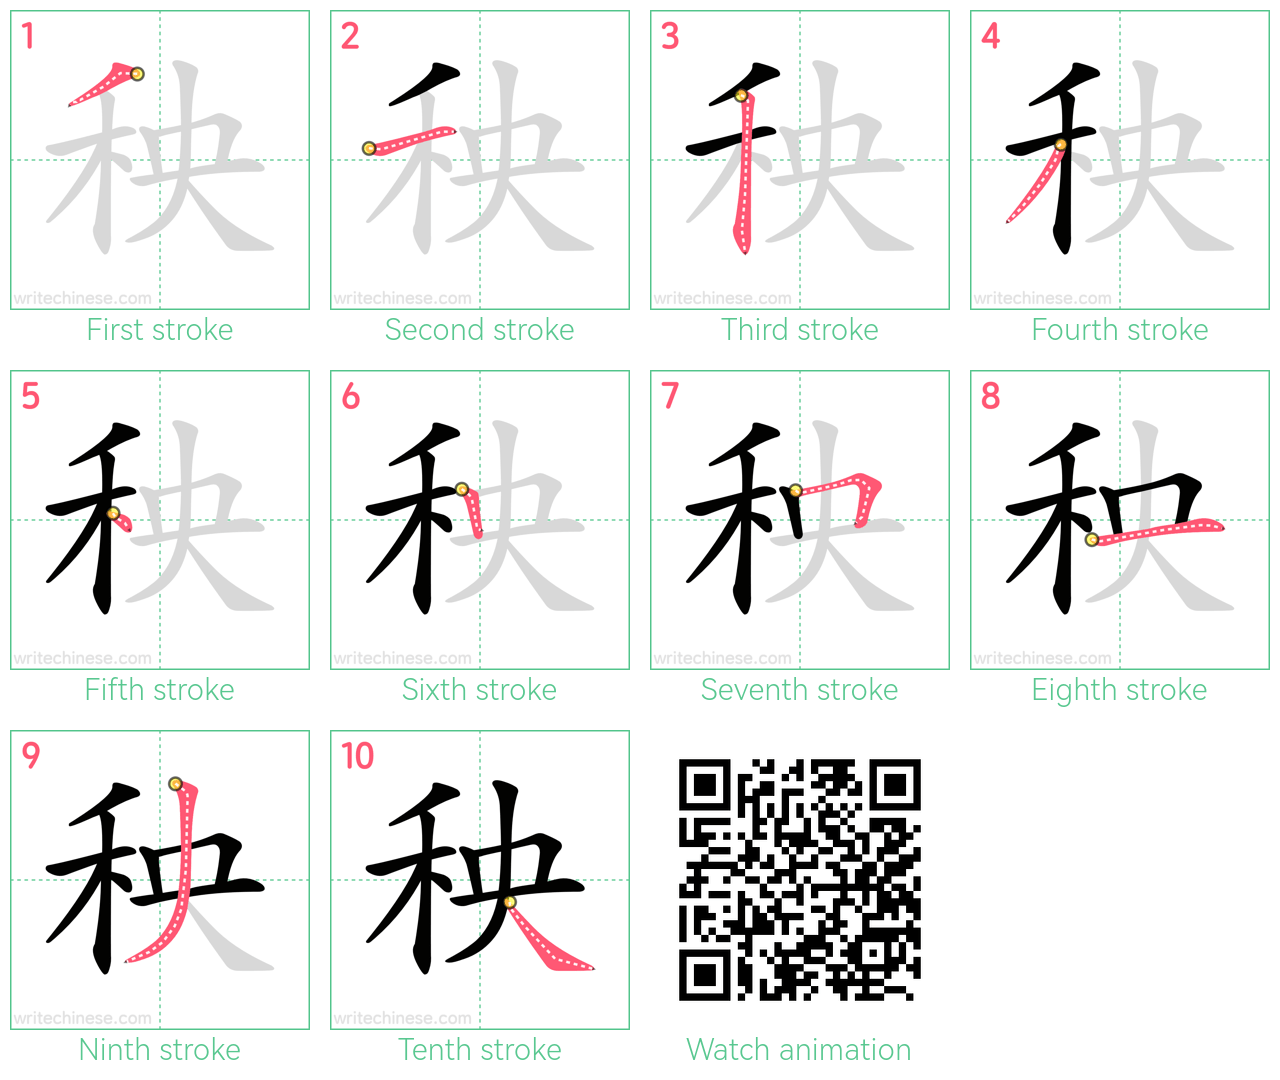 秧 step-by-step stroke order diagrams